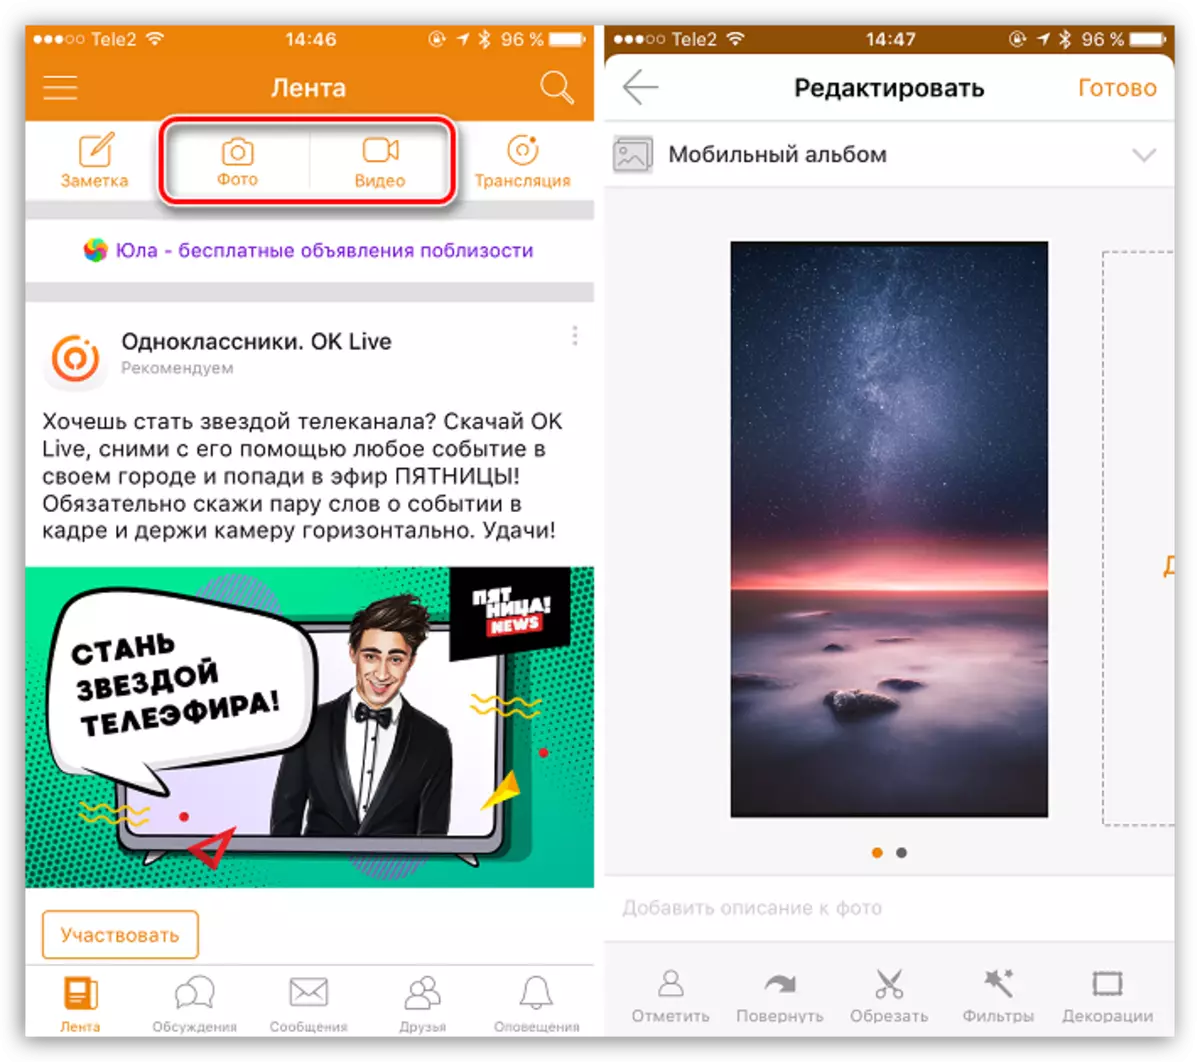 Publikation Fotos und Videos in Apps OdnoKlassniki für iOS